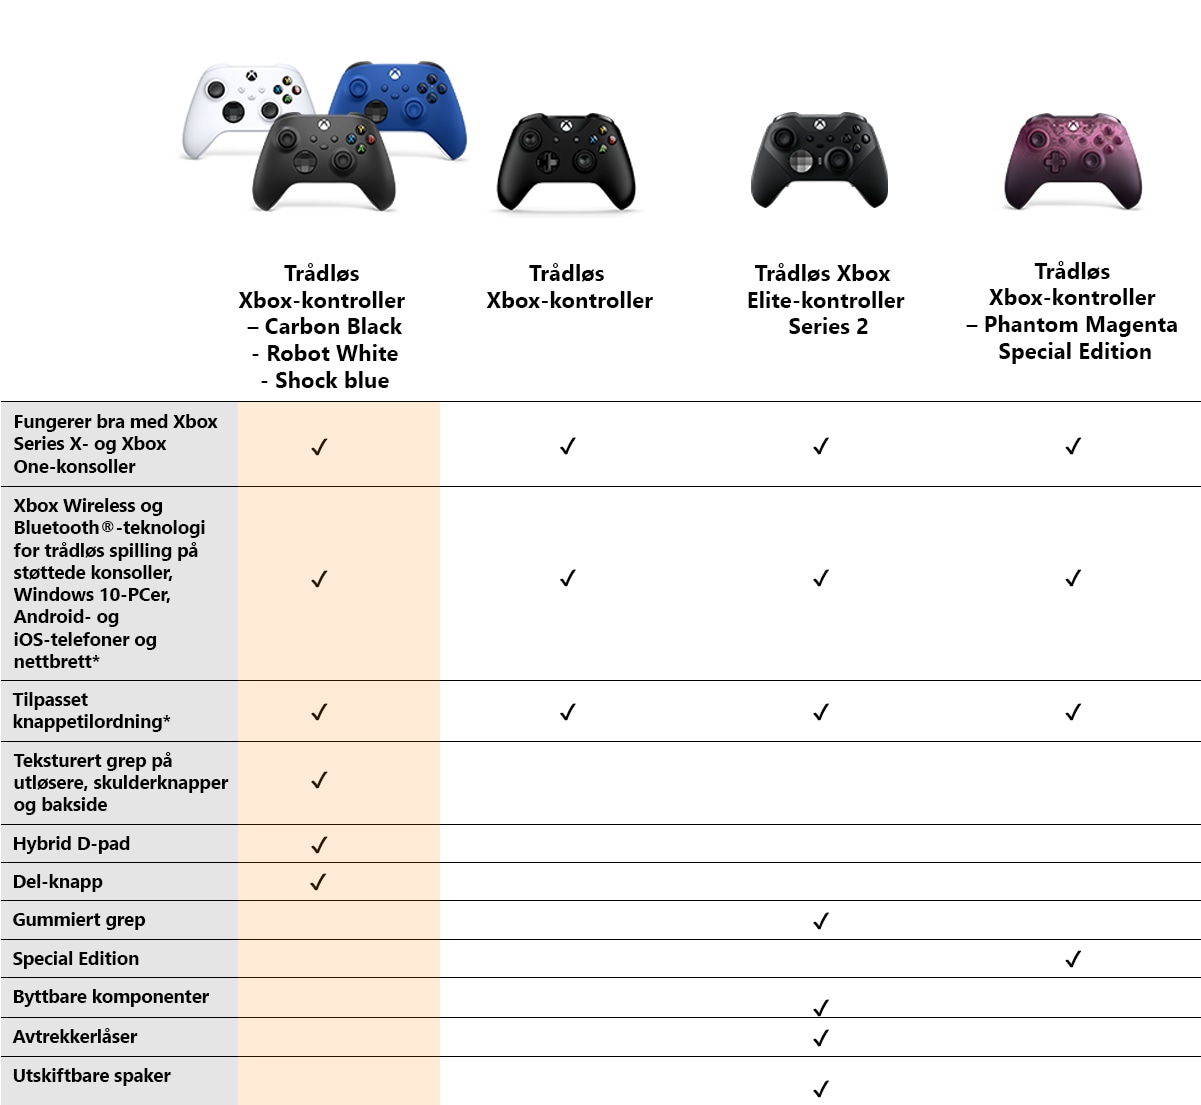 Xbox-kontroller Black Carbon - sammenligning